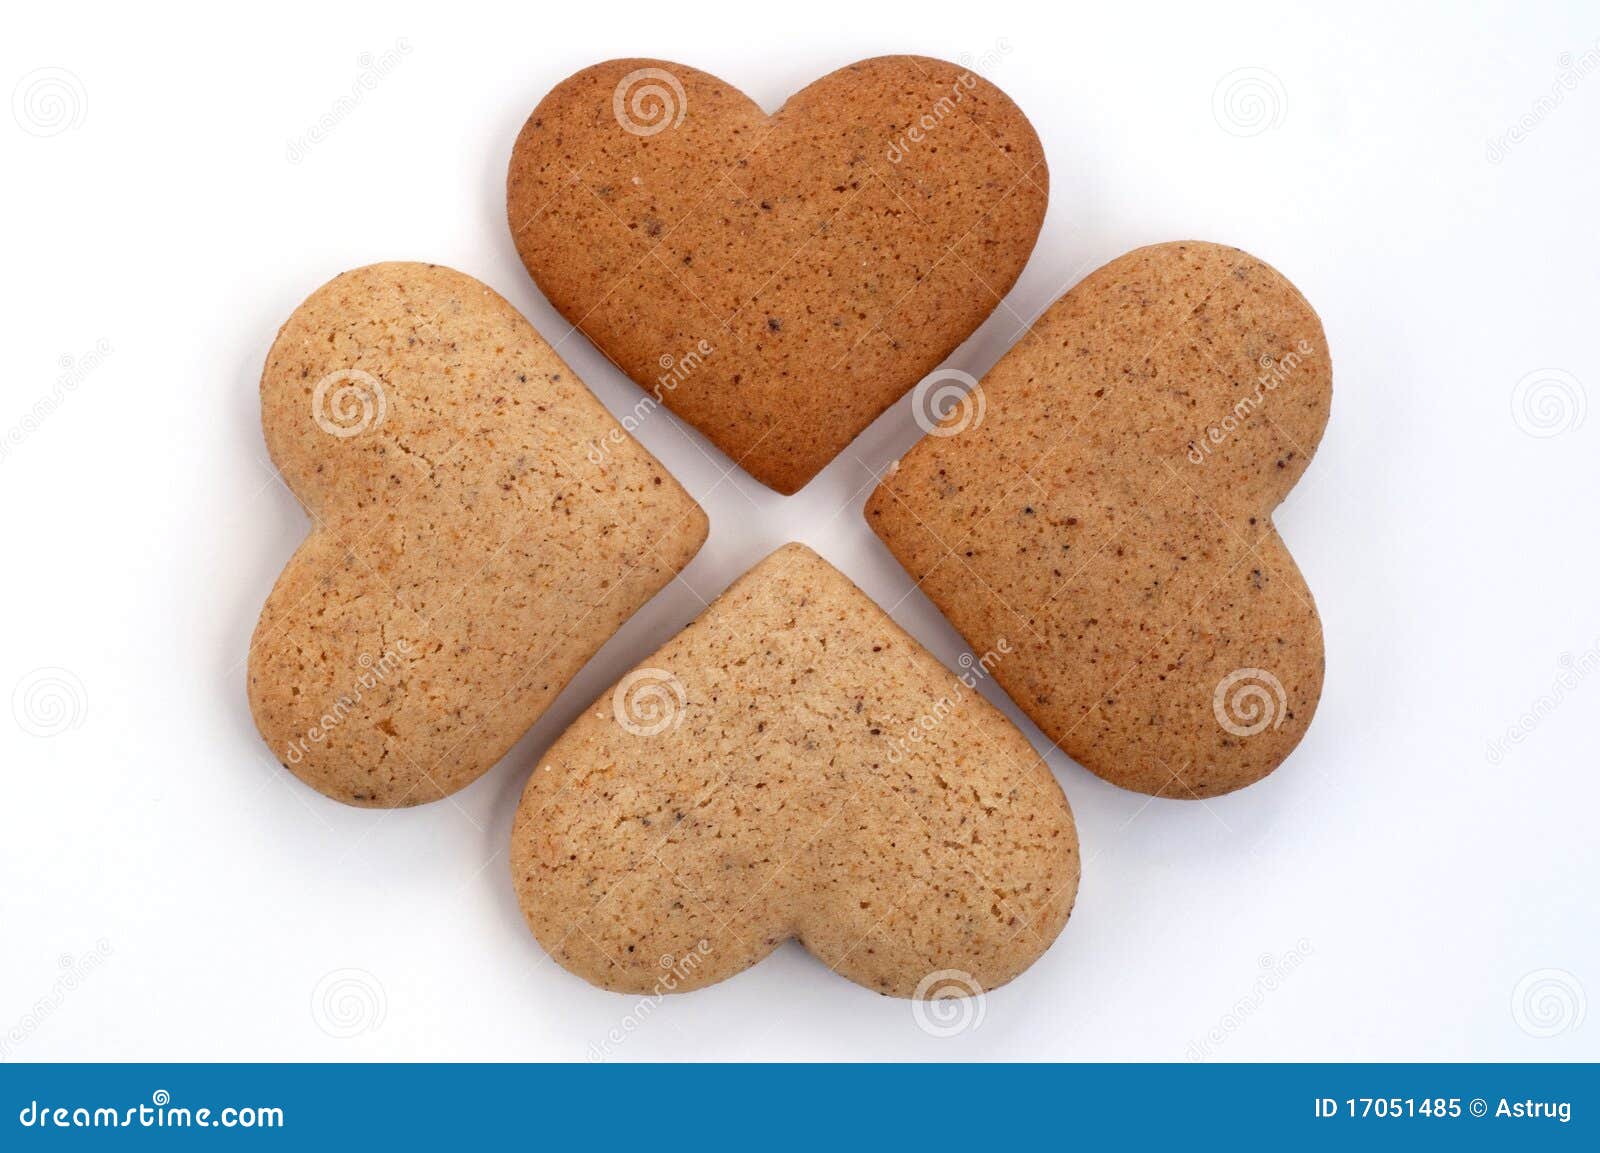 5 печений. Печенье сердечки. Песочное печенье сердечки. Печенье песочные сердечки кг. Фотофон печенье сердечко.